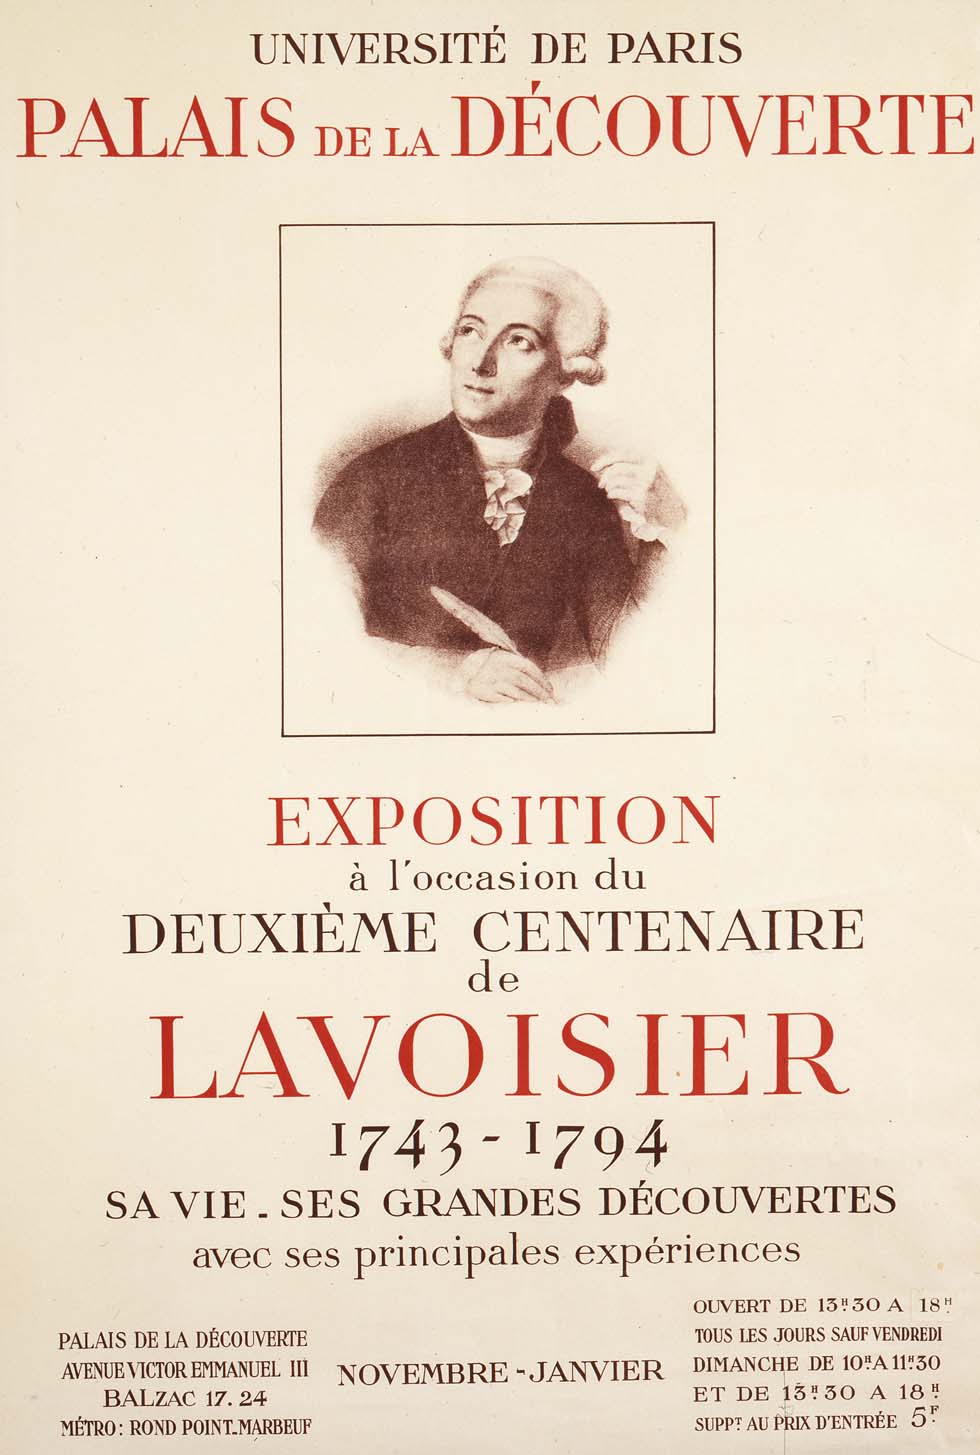 1943 : Deuxième centenaires de Lavoisier(ouverture du diaporama)